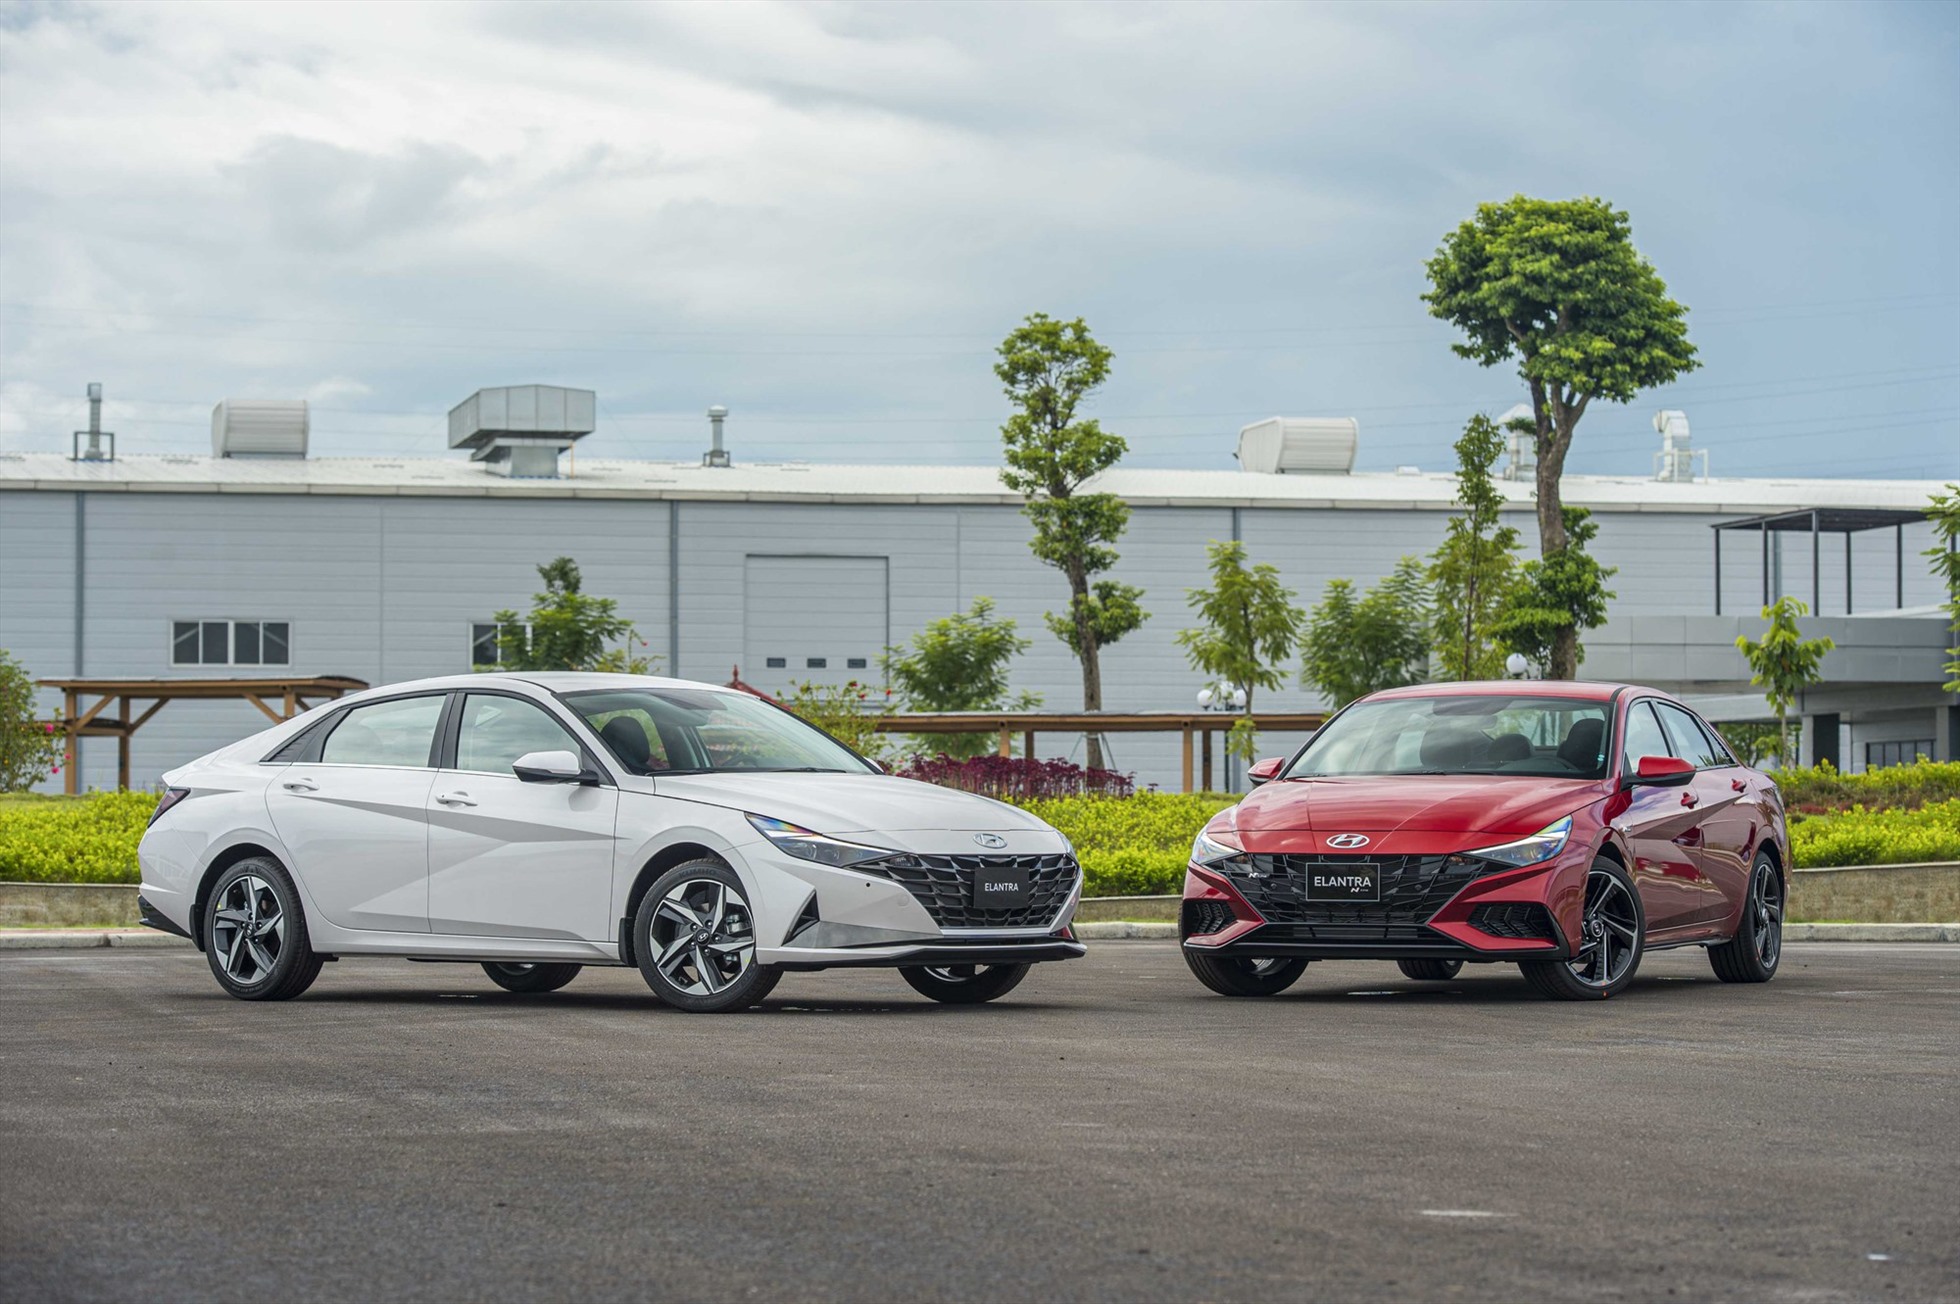 Một số đại lý của hãng Hyundai cũng đang giảm giá Elantra sản xuất năm 2022 để xả hàng tồn. Tuy nhiên, mức giảm của các đại lý cũng khác nhau bởi đây không phải chương trình của hãng. Mức giảm cao nhất được ghi nhận đối với Hyundai Elantra là 60 triệu đồng đối với các phiên bản. Tuy nhiên, số lượng xe cũng hạn chế về cả phiên bản và màu sắc tùy đại lý. Ảnh: TC Motor.